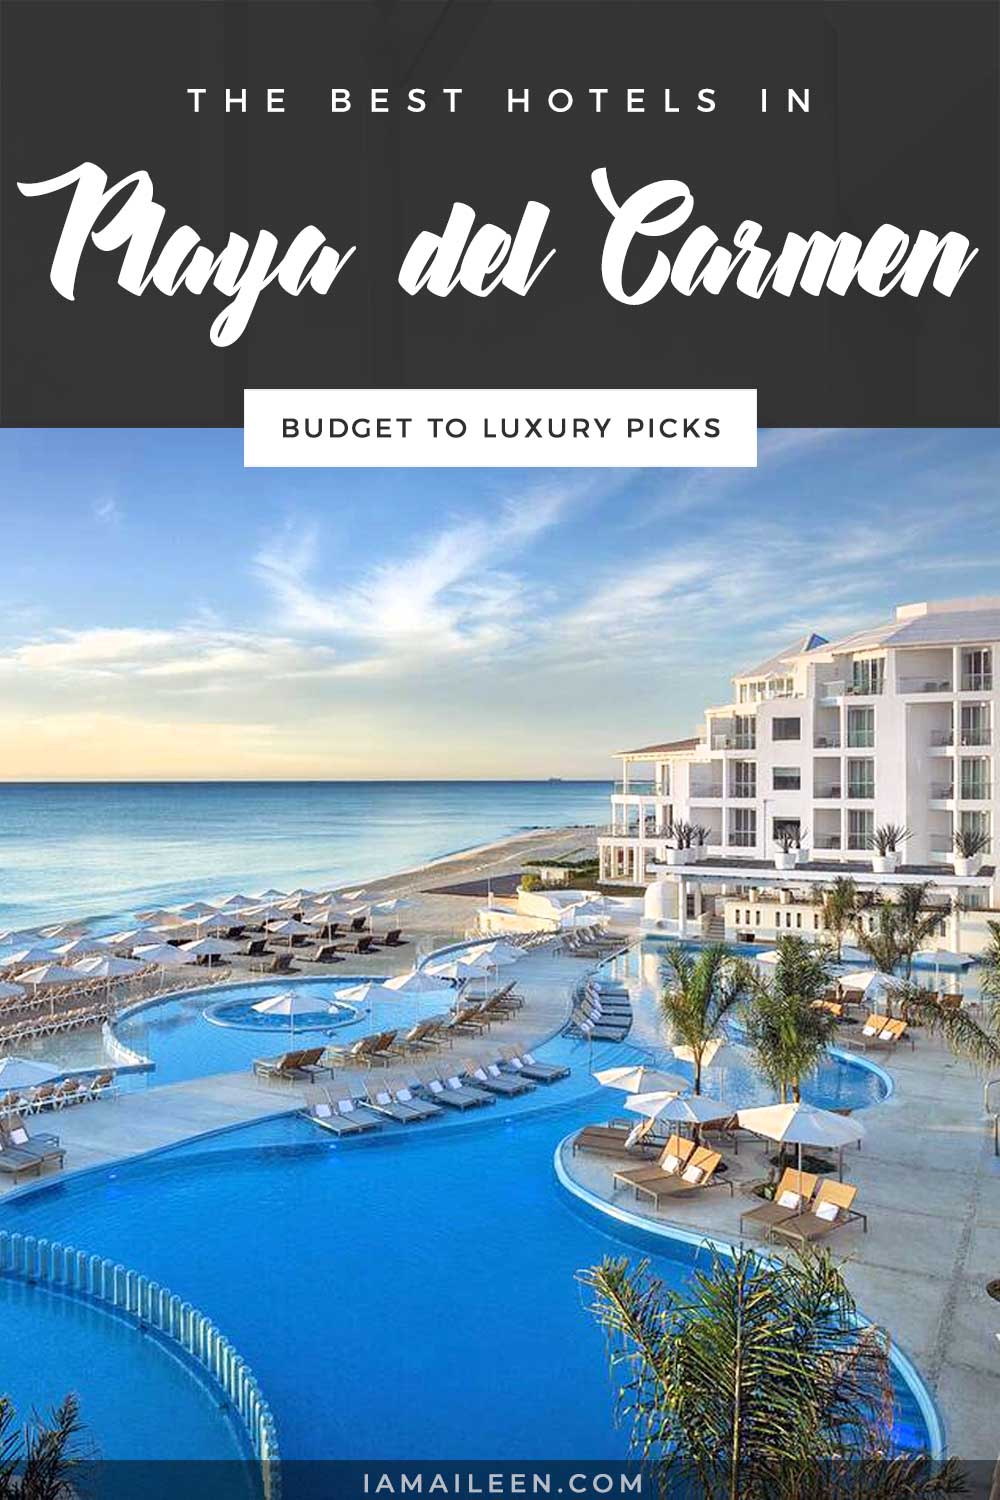 Best Hotels in Playa del Carmen